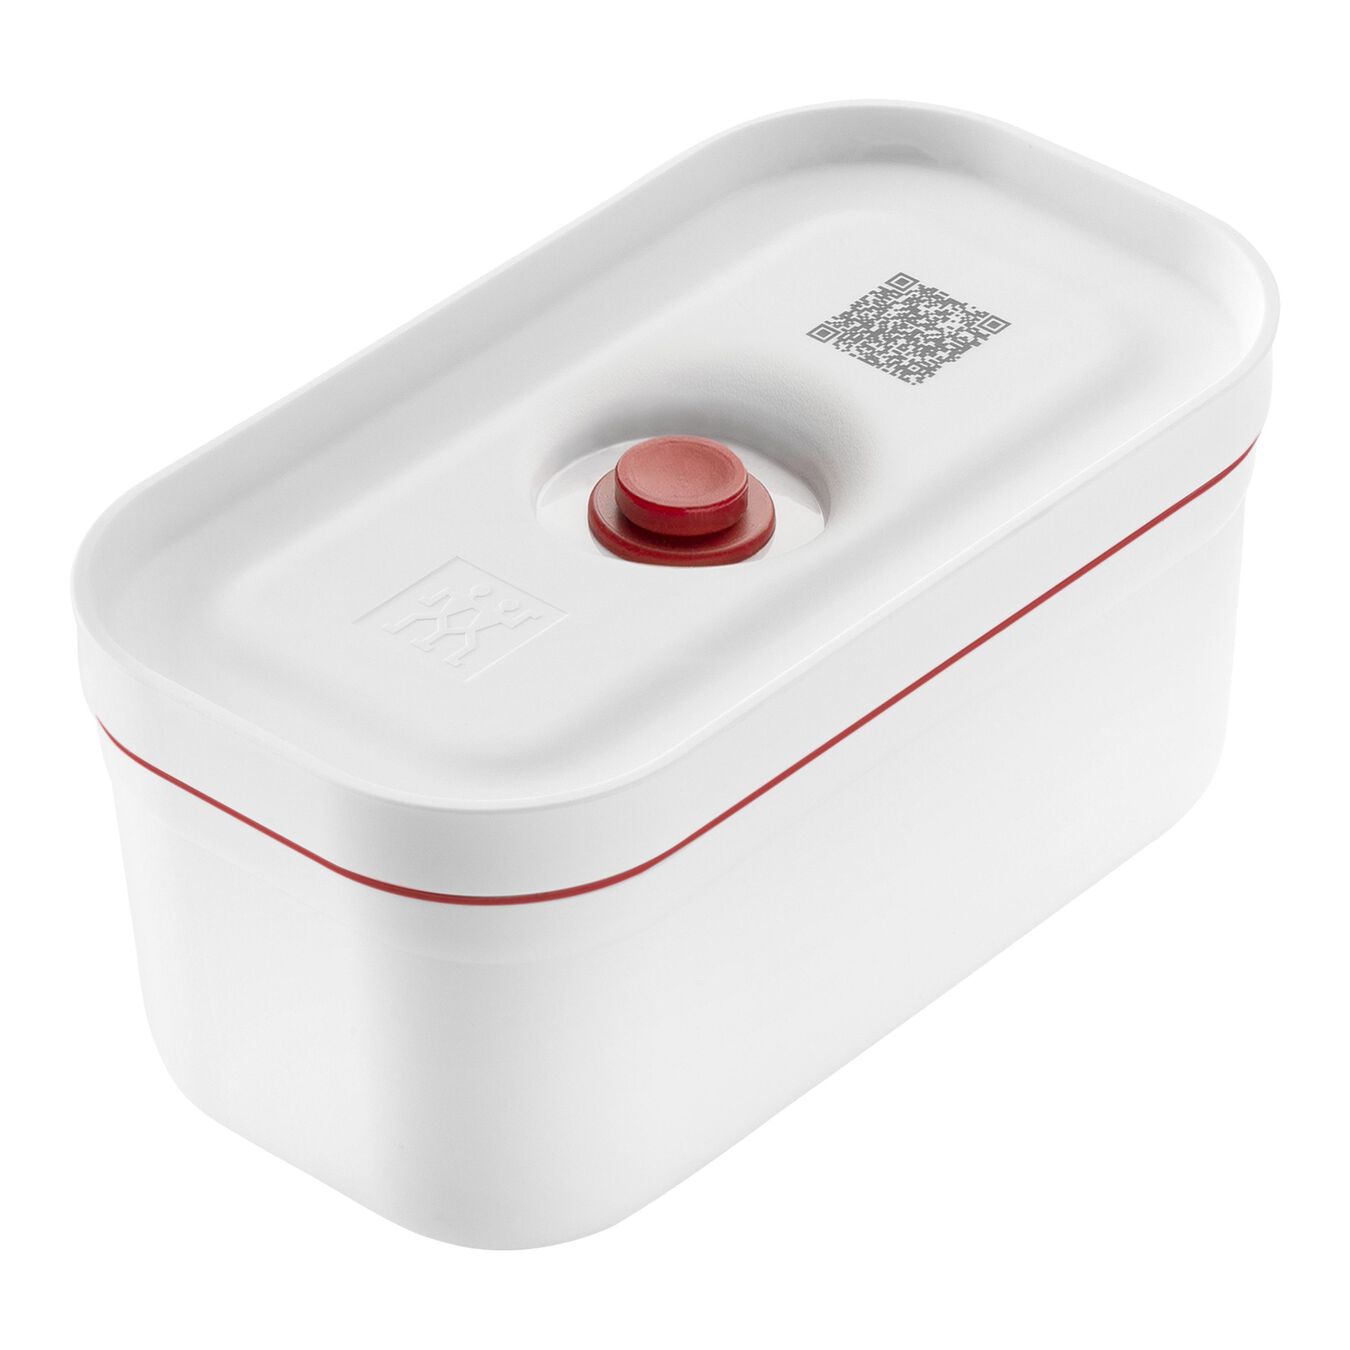 Lunch box sottovuoto S, plastica, bianco-rosso,,large 1